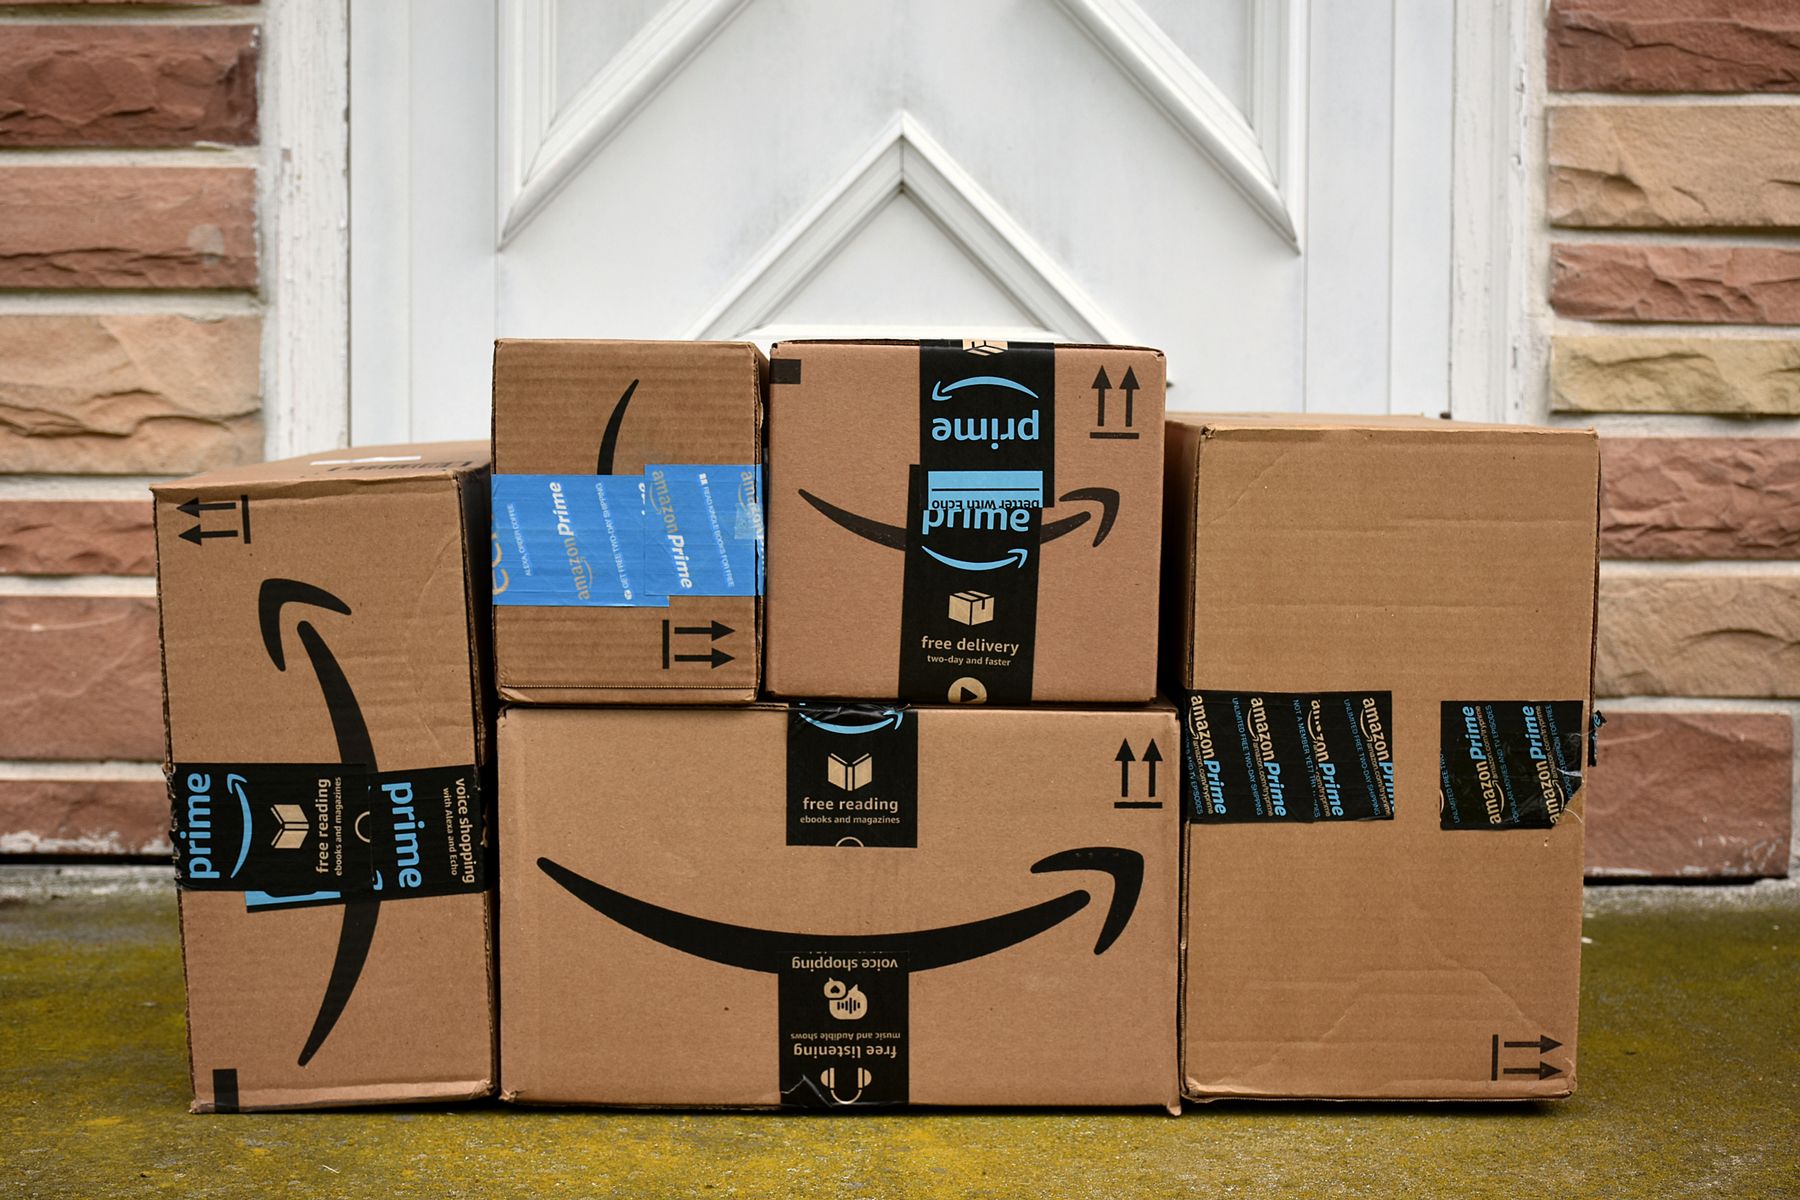 Spoločnosť Amazon ponúka pre sviatky dopravu zdarma pre všetkých